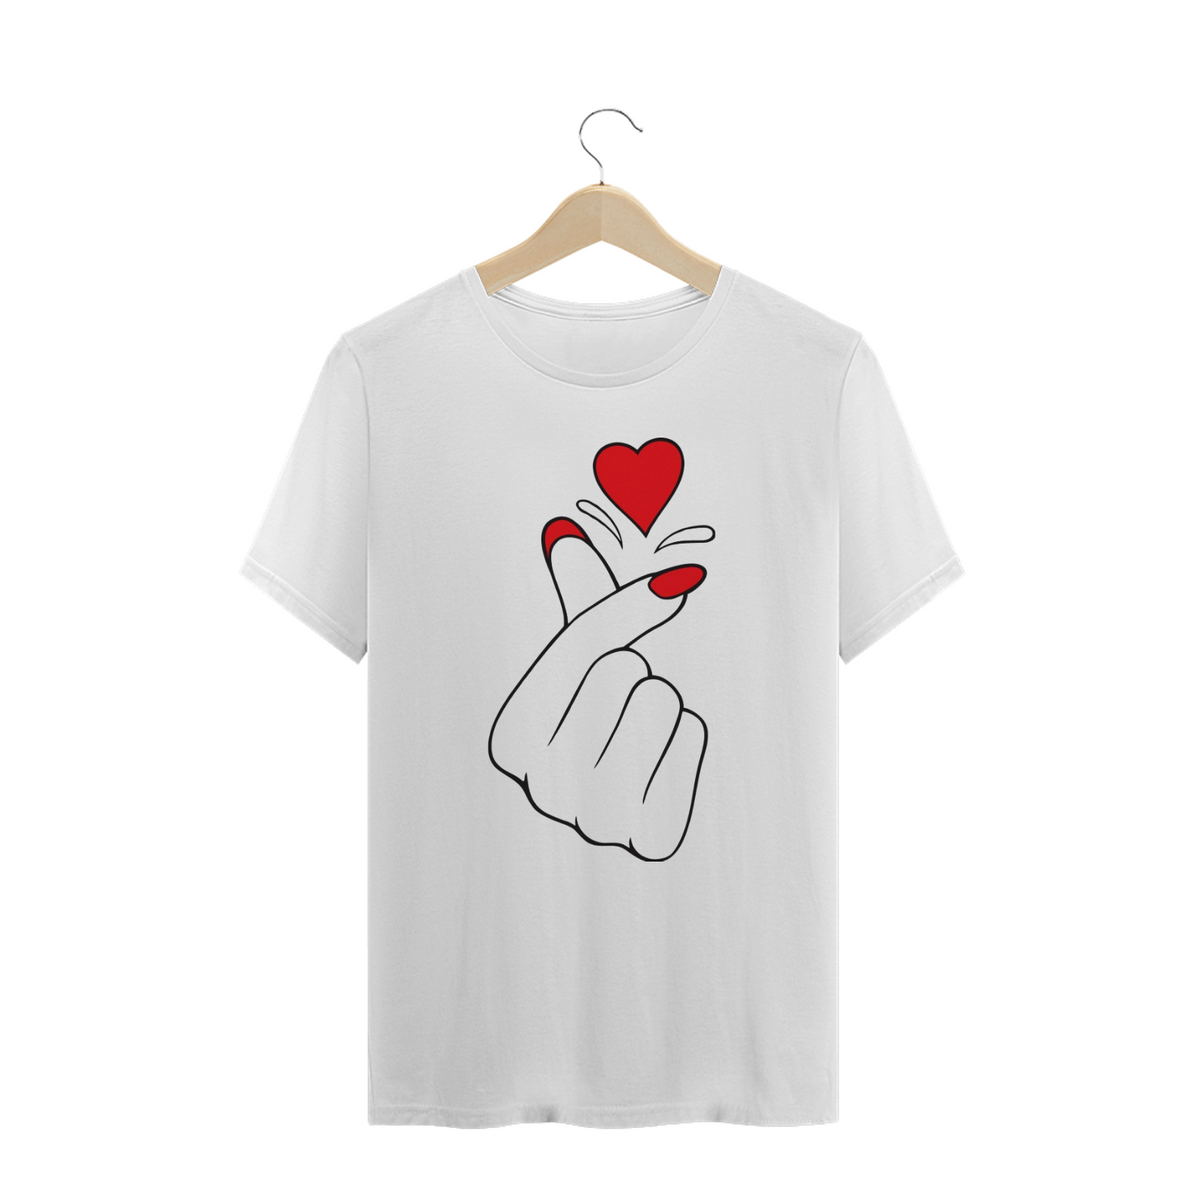 Nome do produto: T-shirt Quality Plus Size - Dedo da Cor do Coração